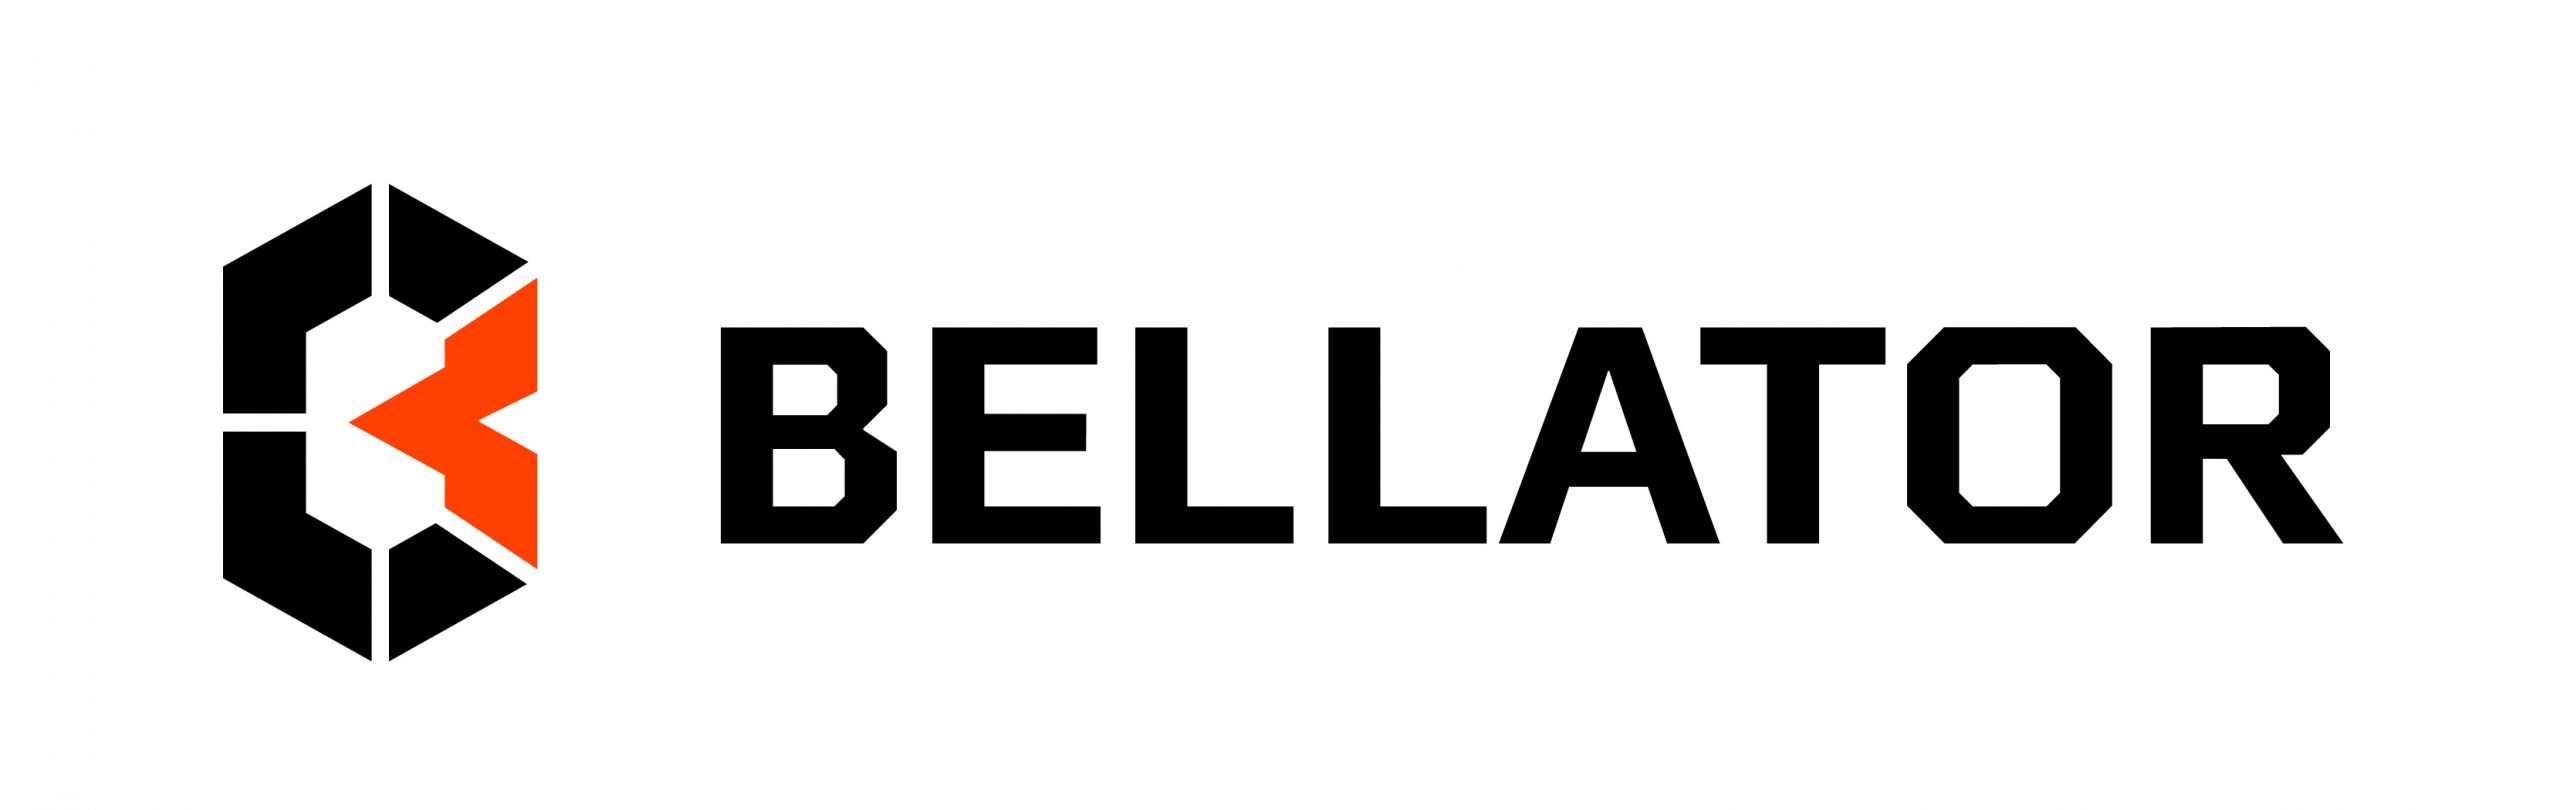 Bellaor 